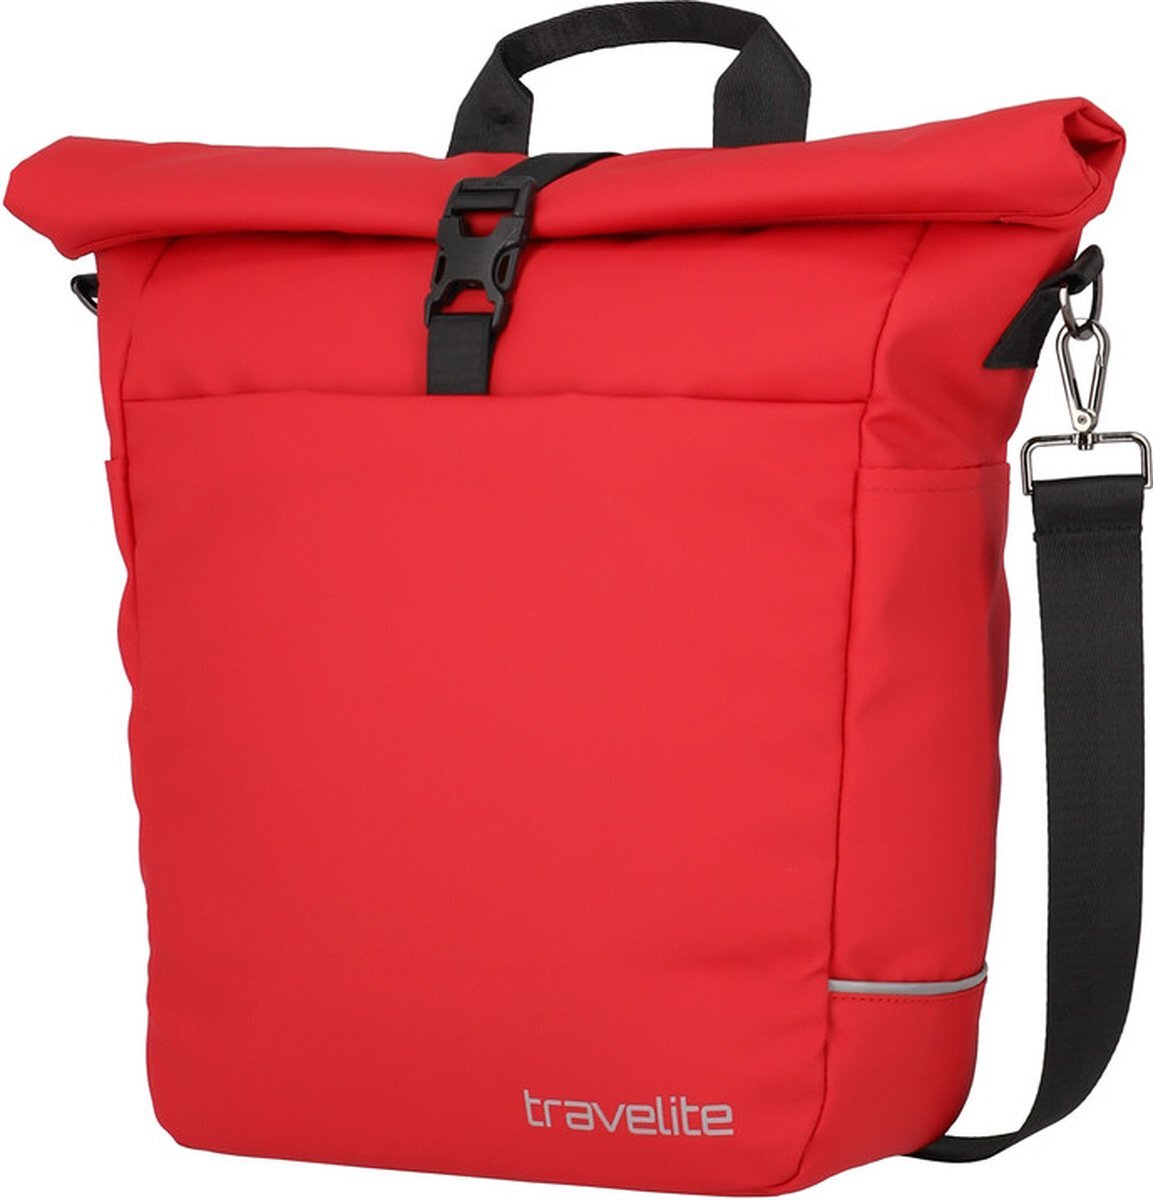 travelite Basics fietstas-schoudertas rood